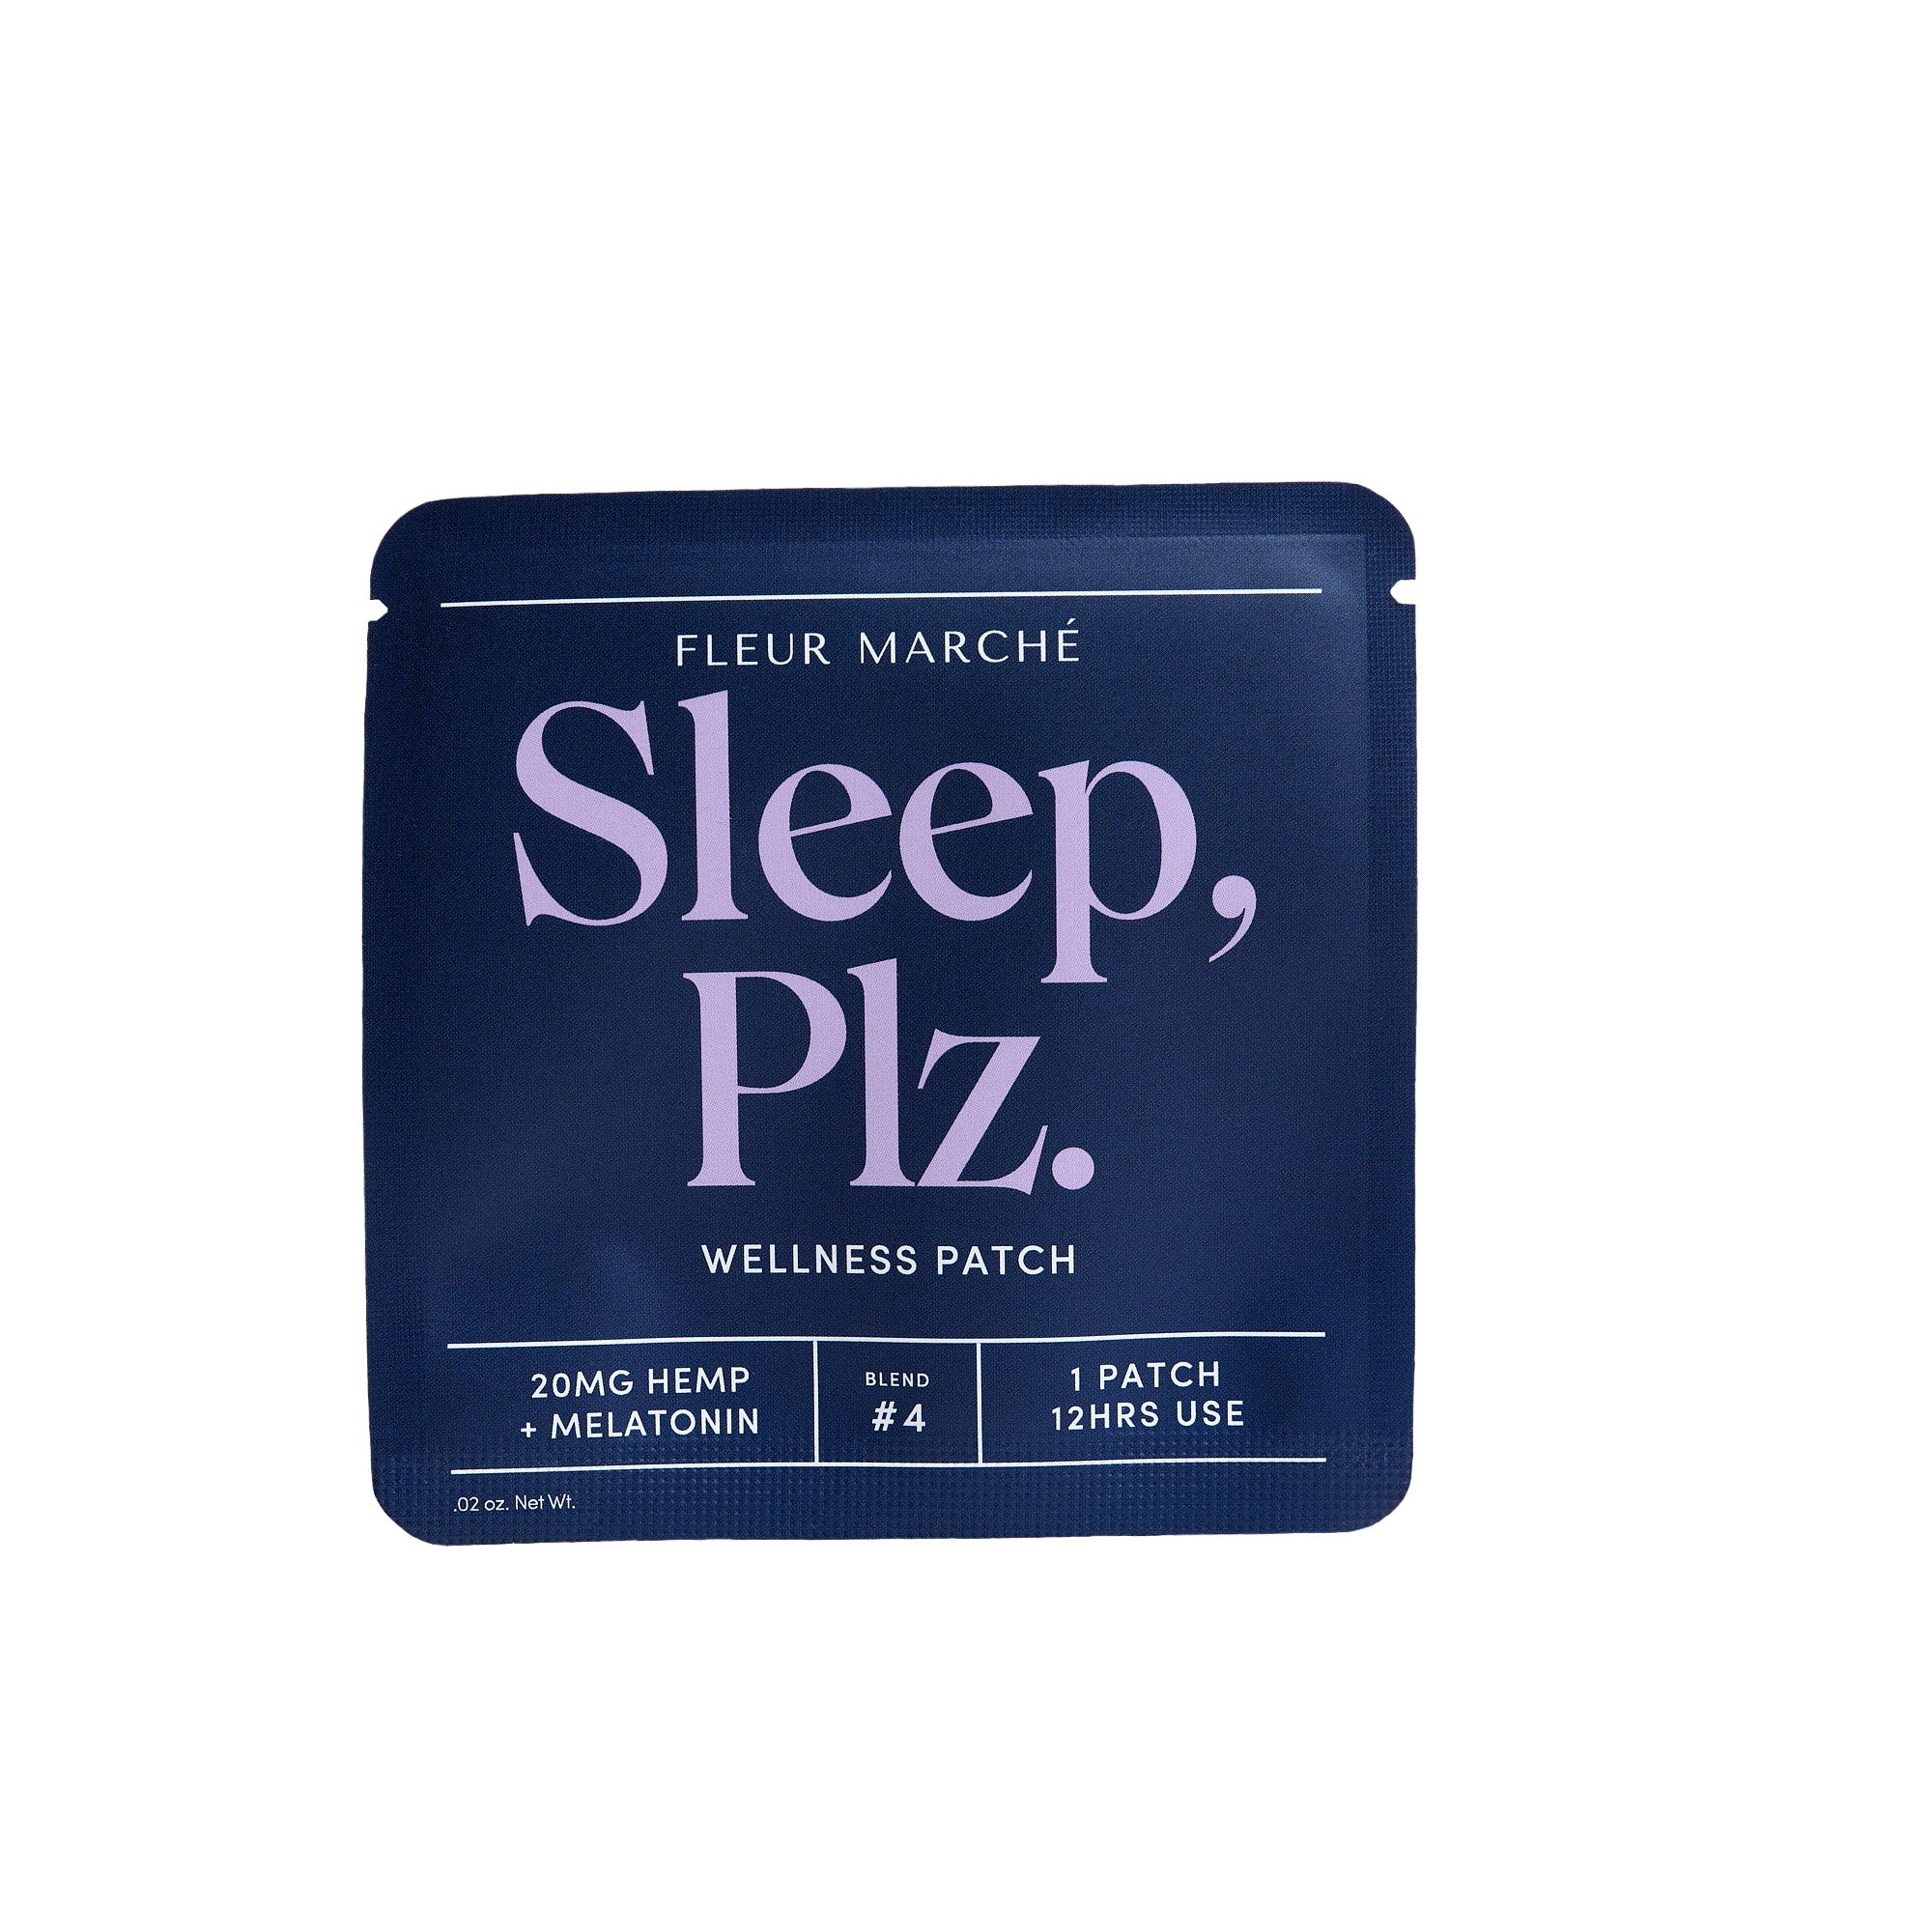 Wholesale Sleep, Plz.